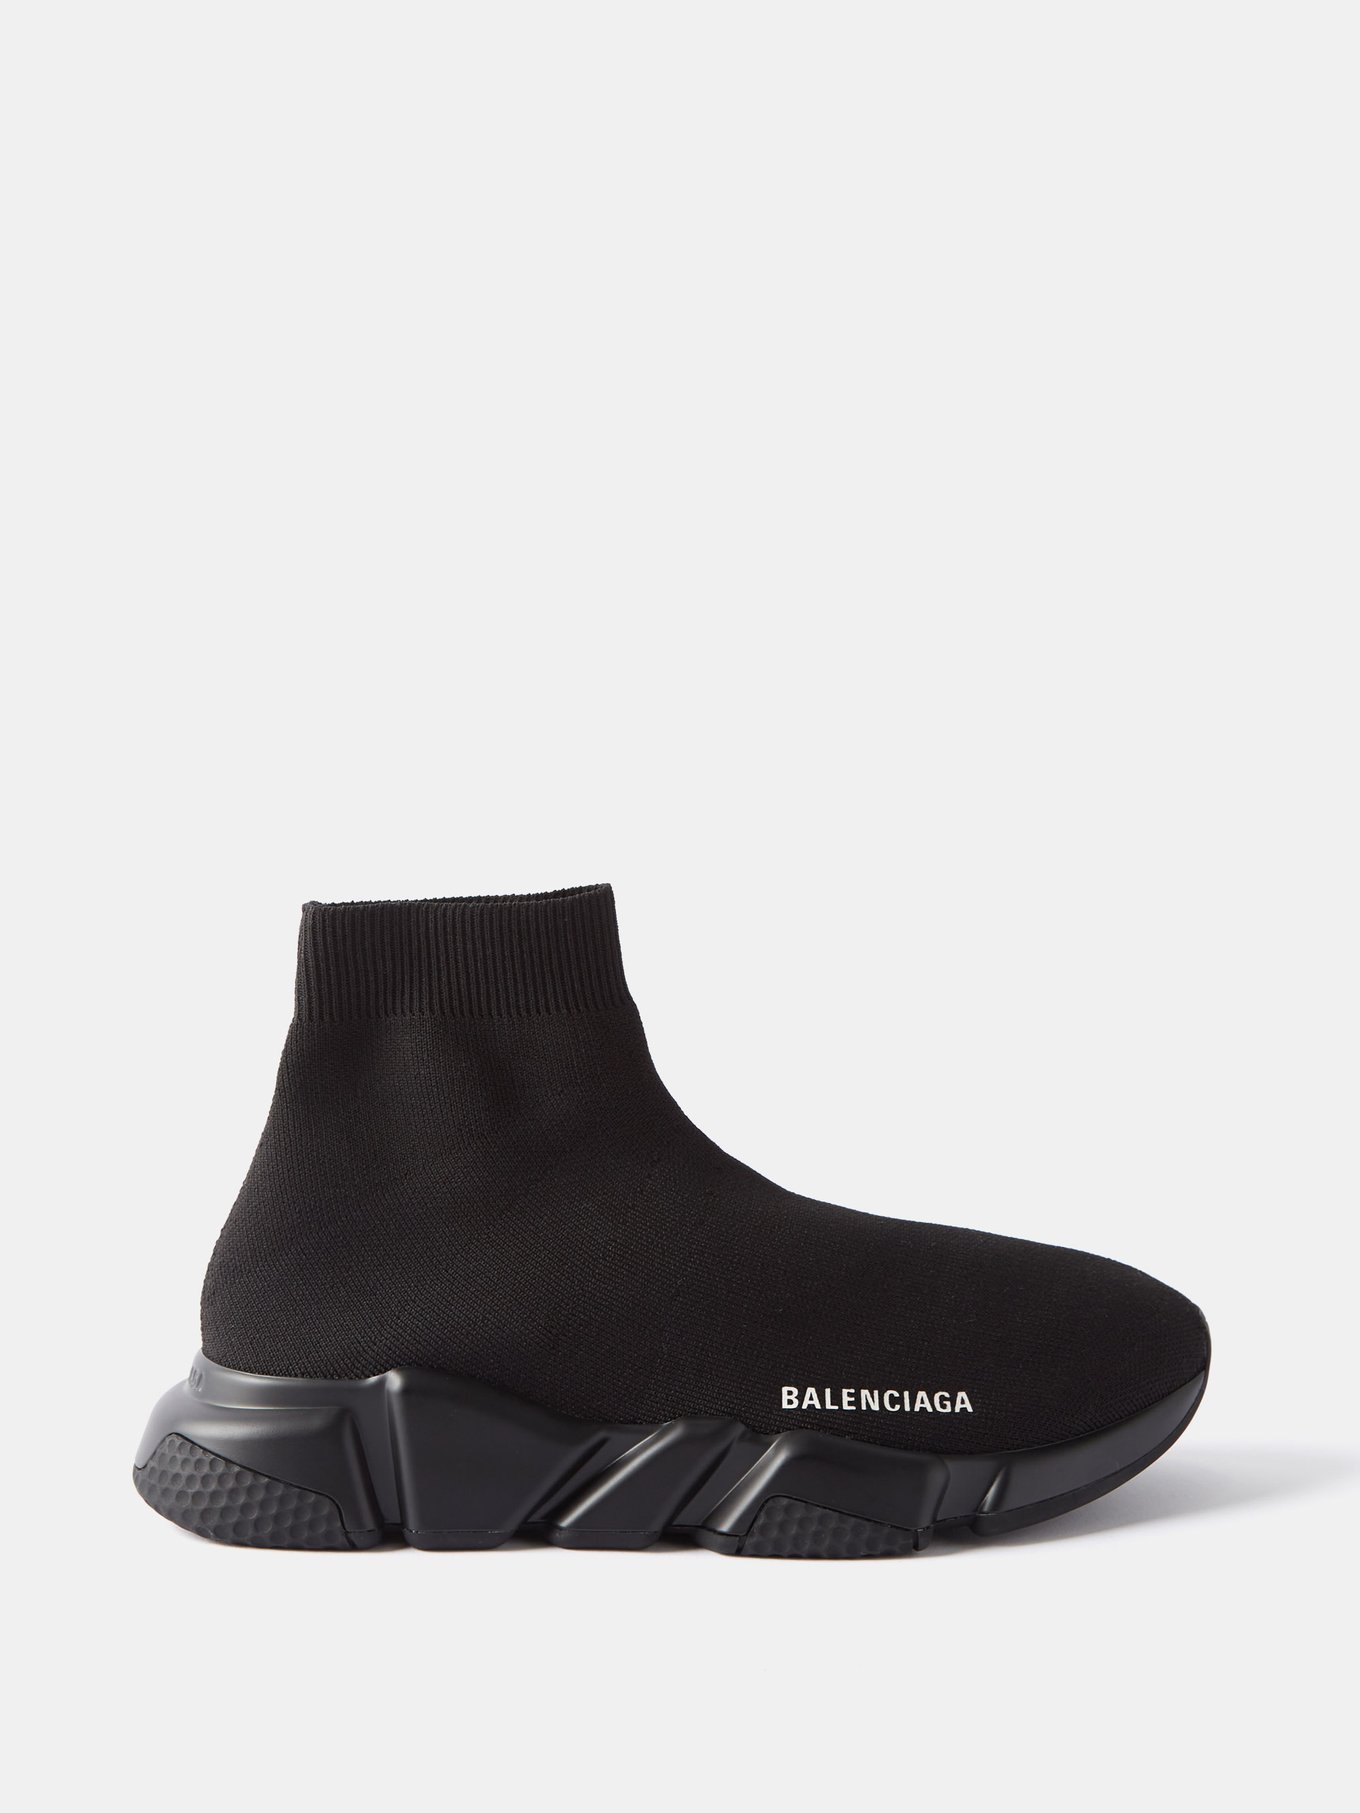 Balenciaga Sock Sneaker Lookbook  4 Contemporary Outfits for Men  Marcel  Floruss  YouTube